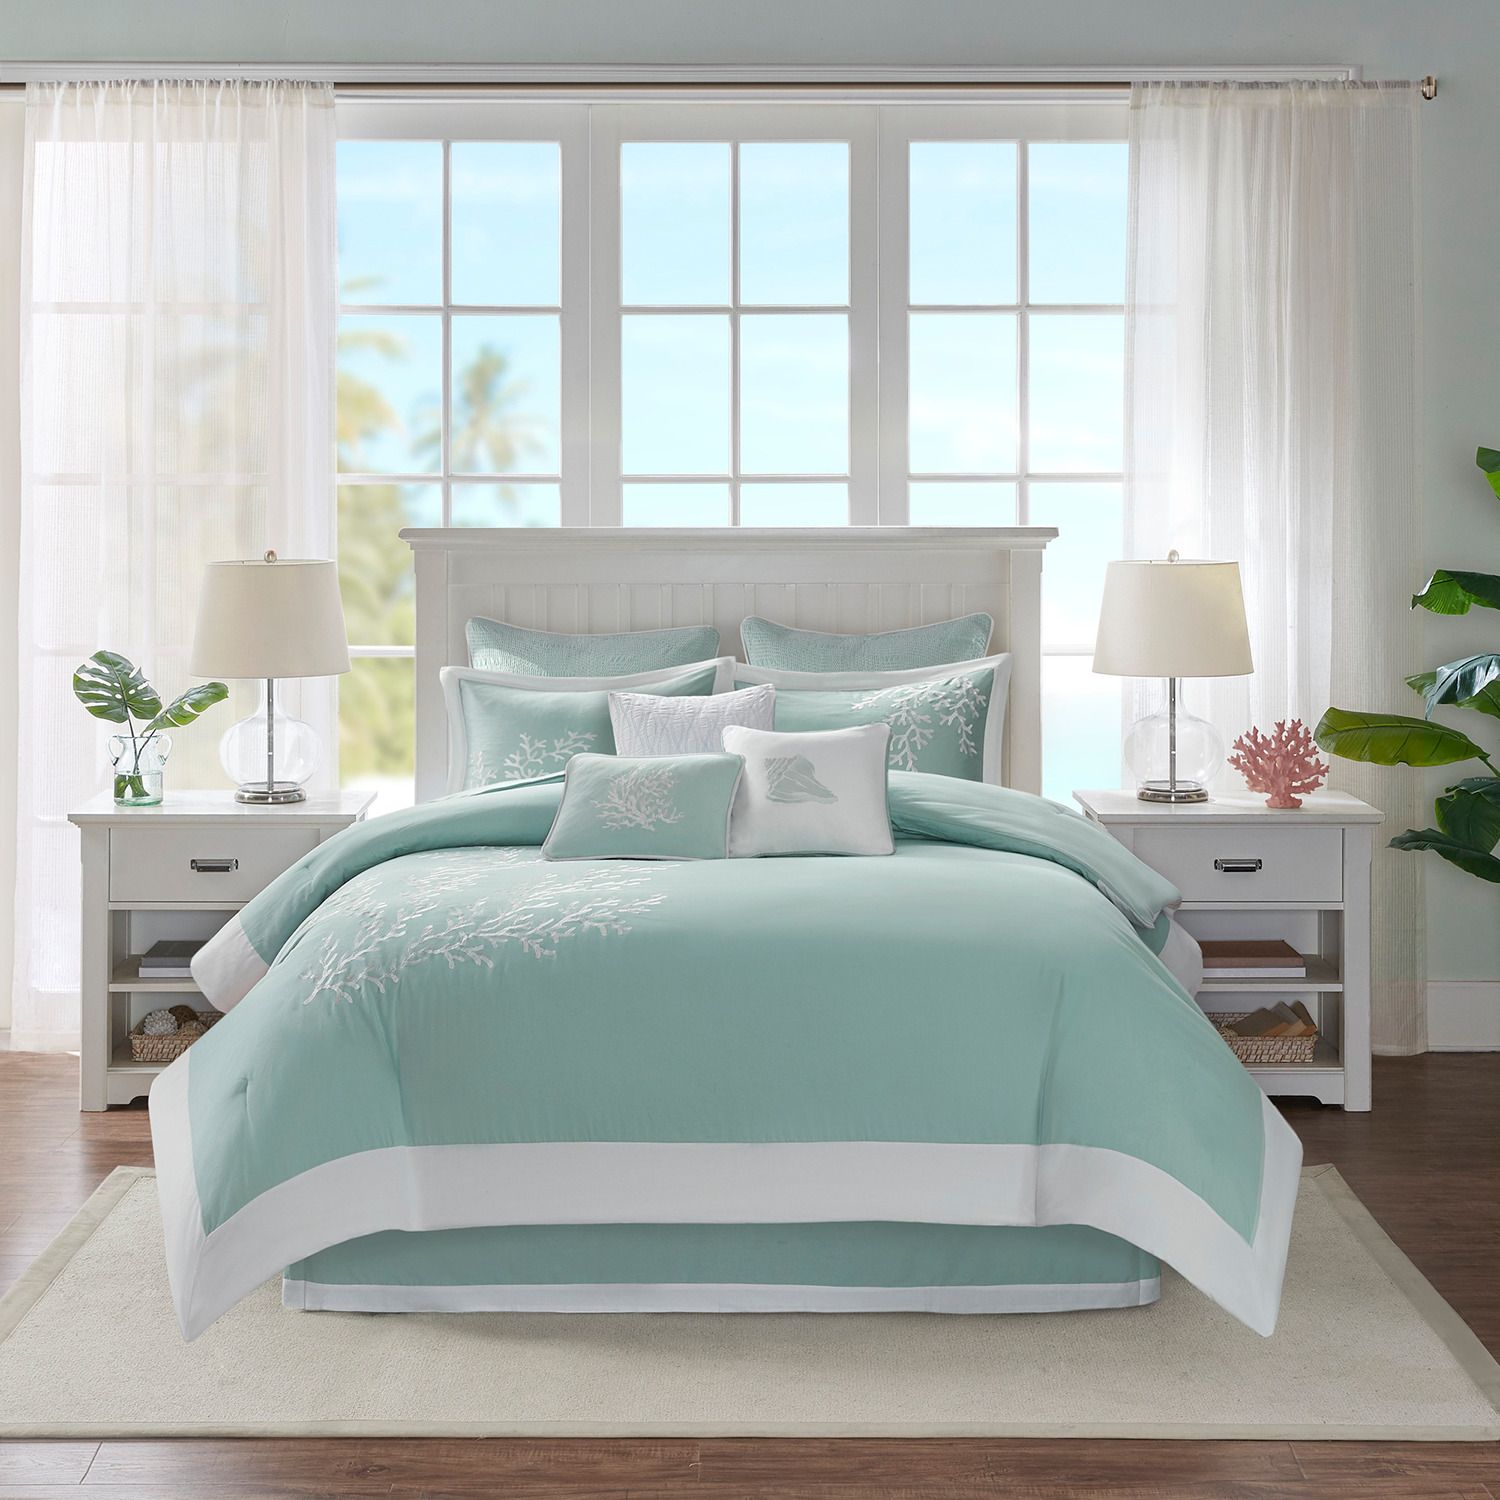 Image for Harbor House Coastline Comforter Set at Kohl's.